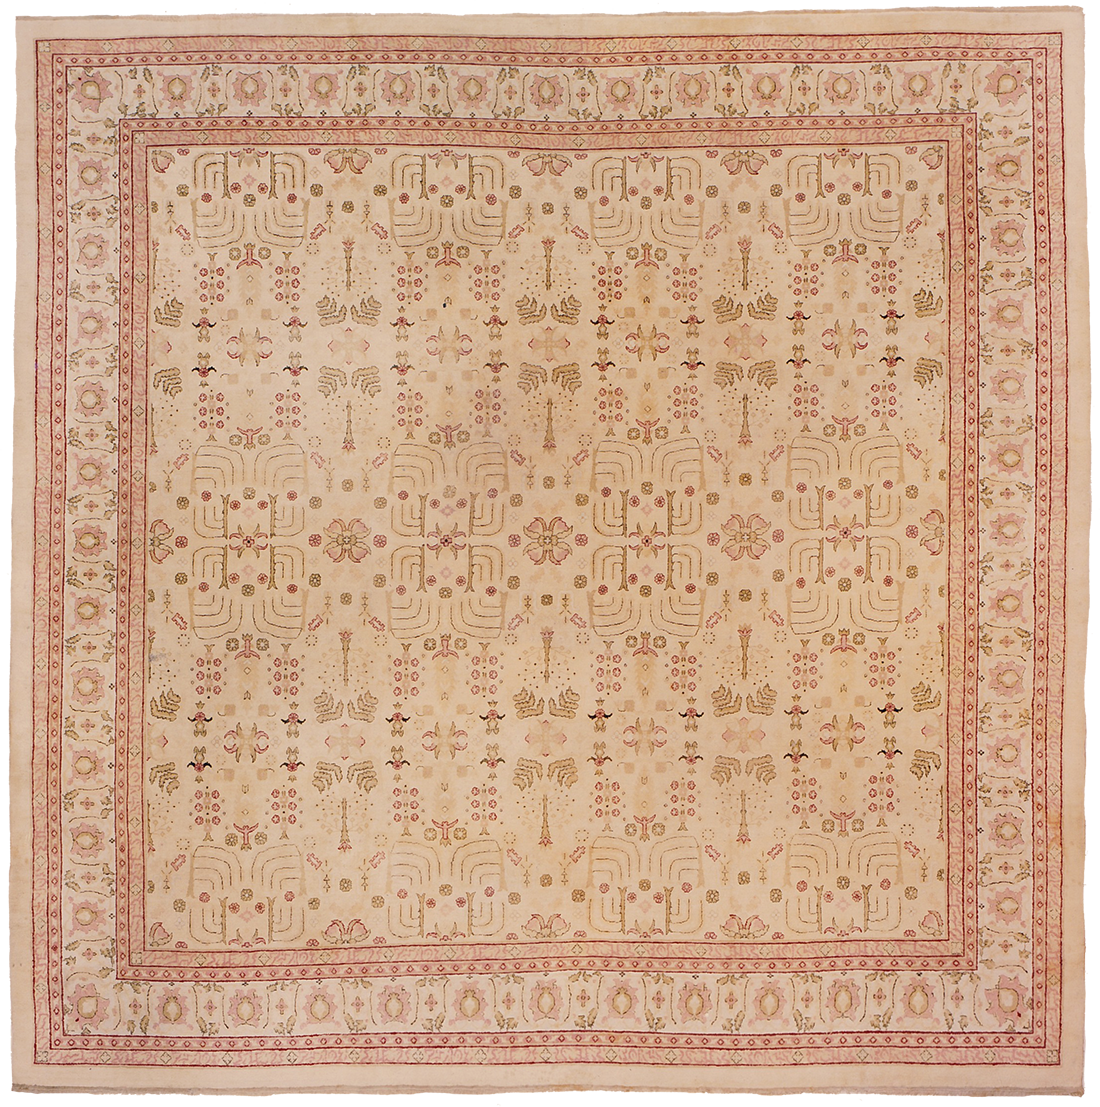 Rare Amritsar Carpet